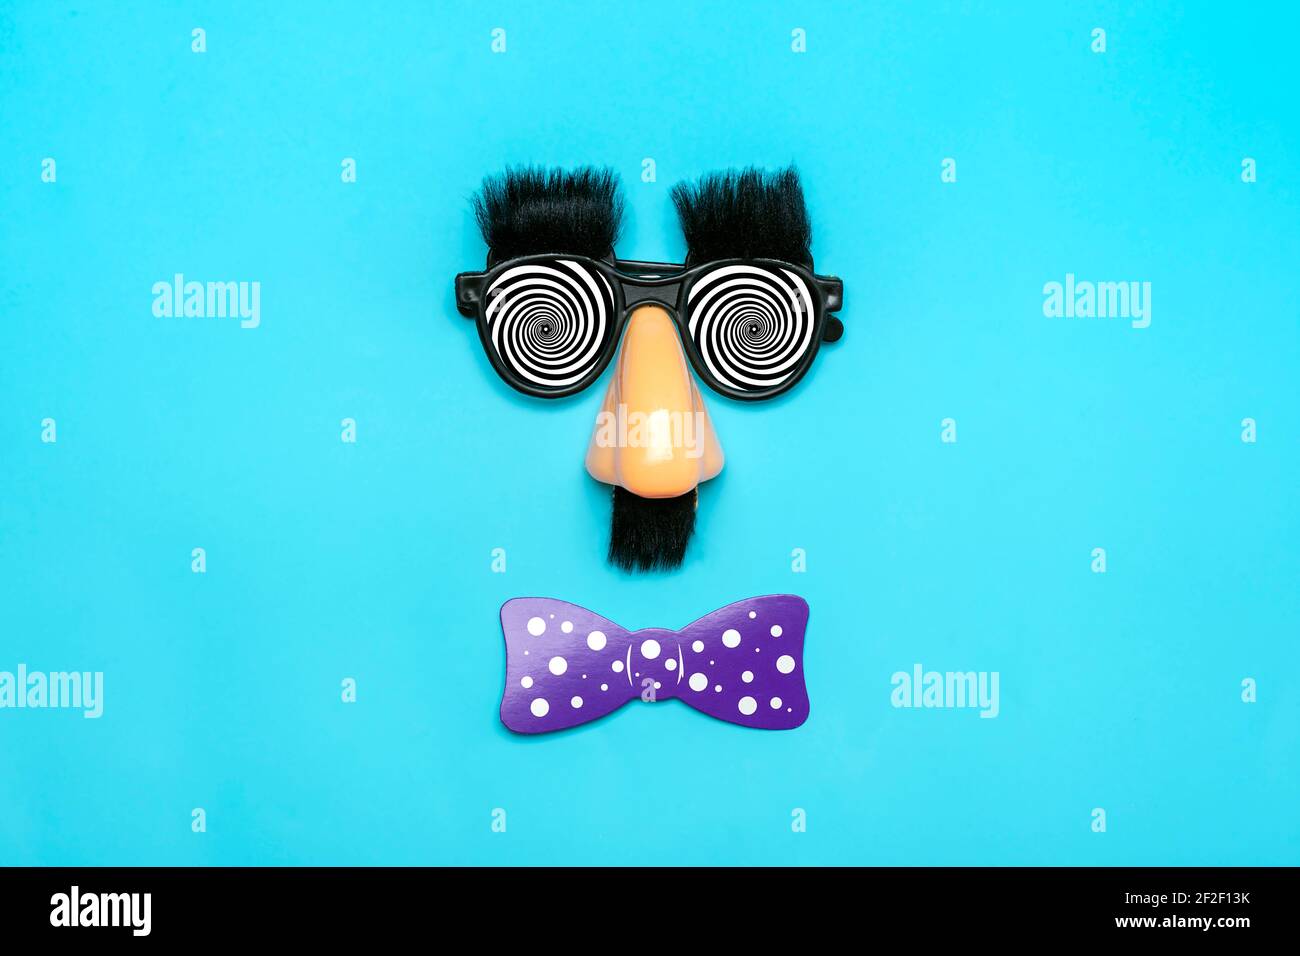 Faccia divertente - occhiali falsi, naso e baffi, confetti, paillettes su sfondo blu Happy fools Day Concept 1st April party Holiday card Foto Stock